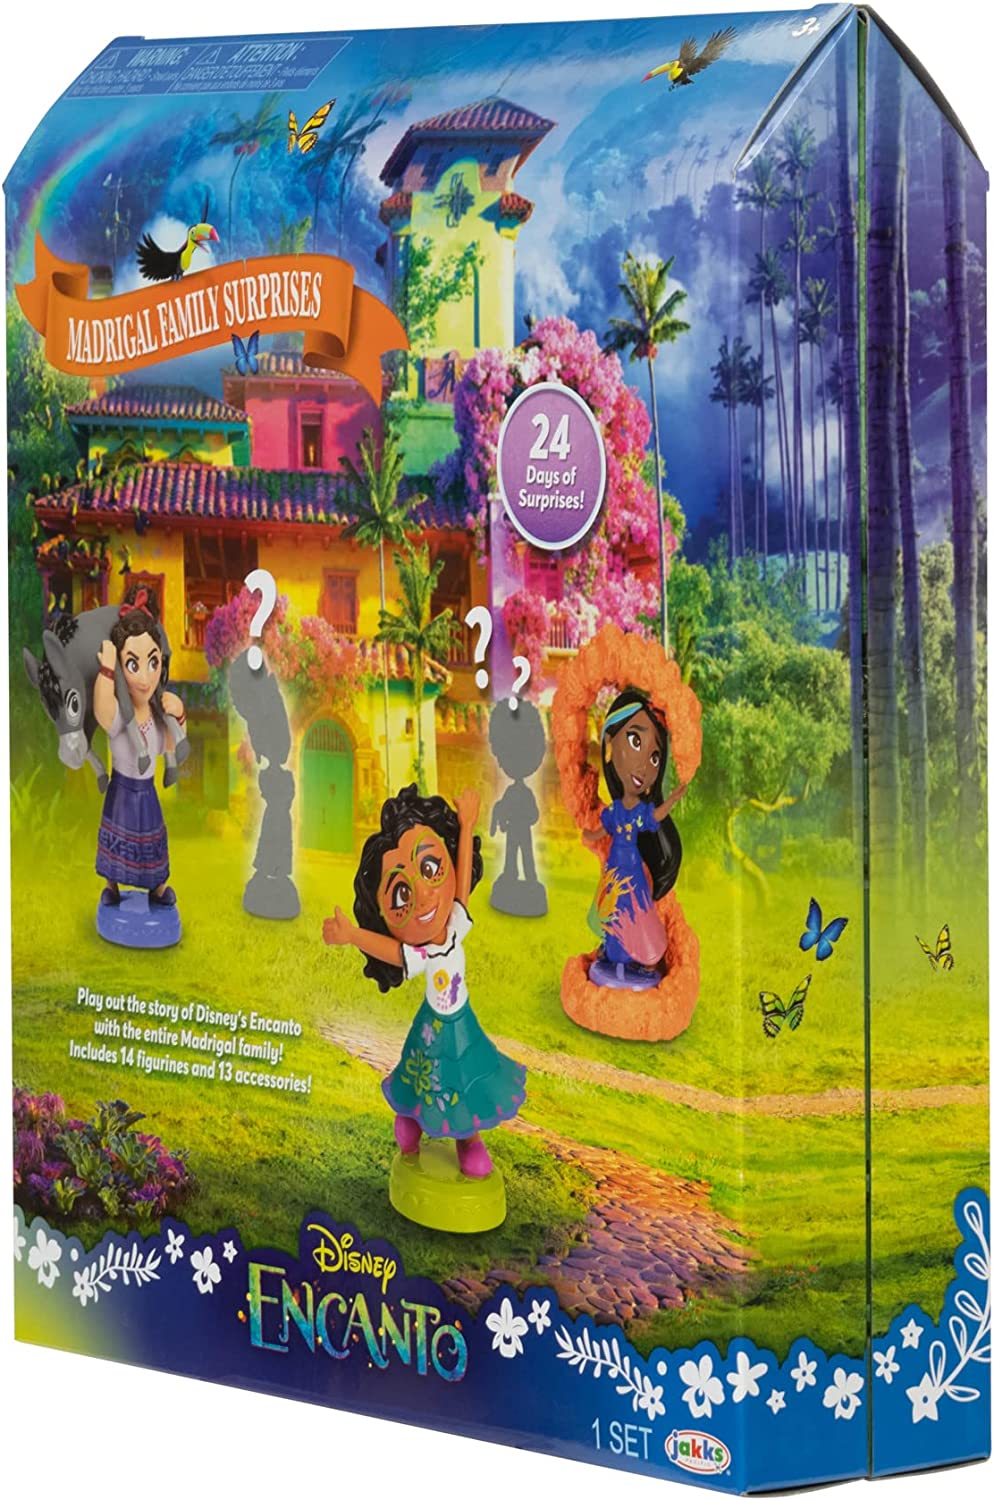 Disney Encanto Advent Calendar Reviews Get All The Details At Hello